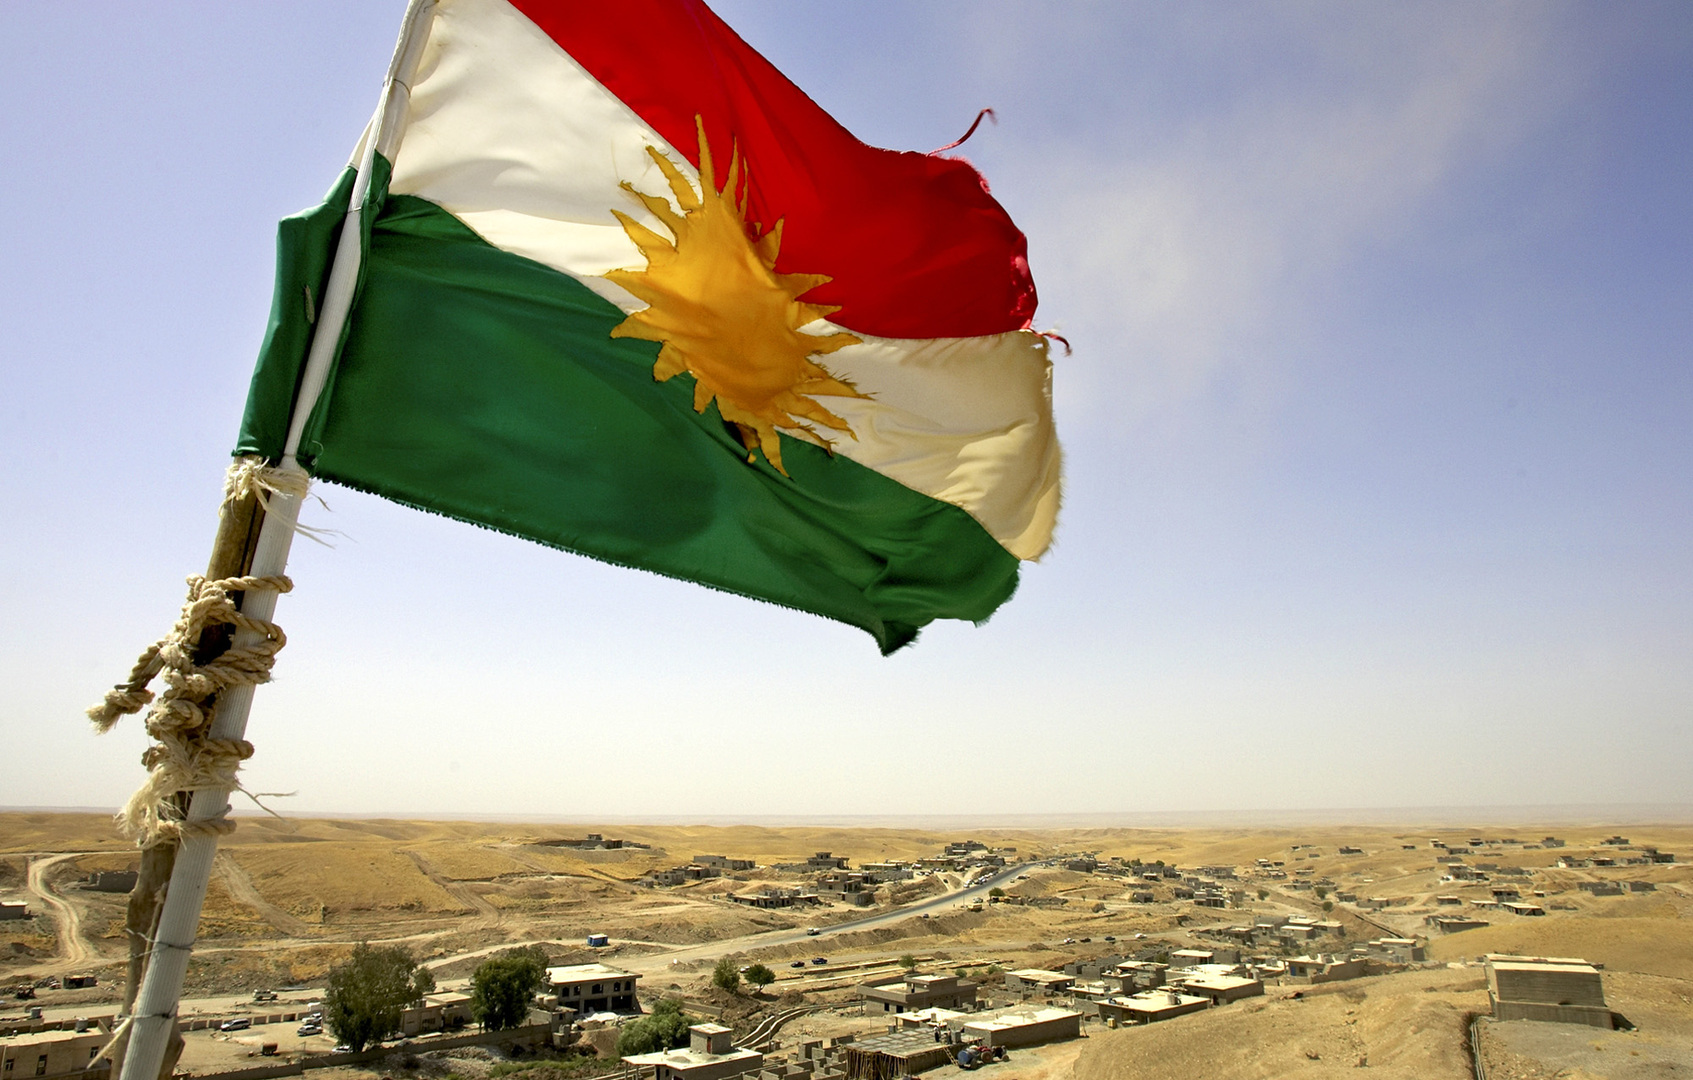 المحكمة الاتحادية العراقية تصدر قرارا يتعلق بمفوضية انتخابات إقليم كردستان